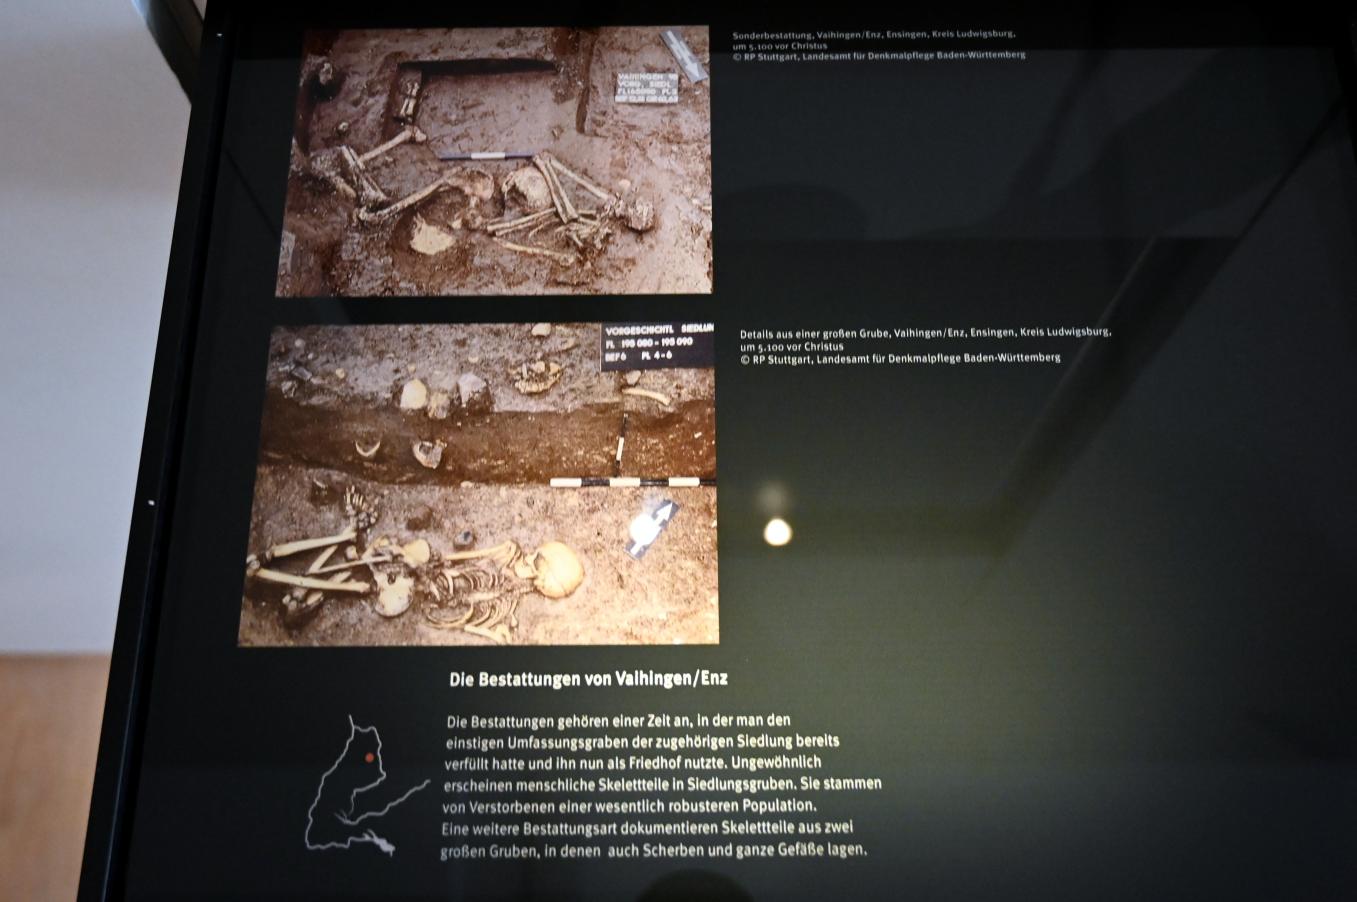 Vaihingen an der Enz, K1697, Bandkeramische Siedlung, 5300 - 5100 v. Chr., Bild 1/2